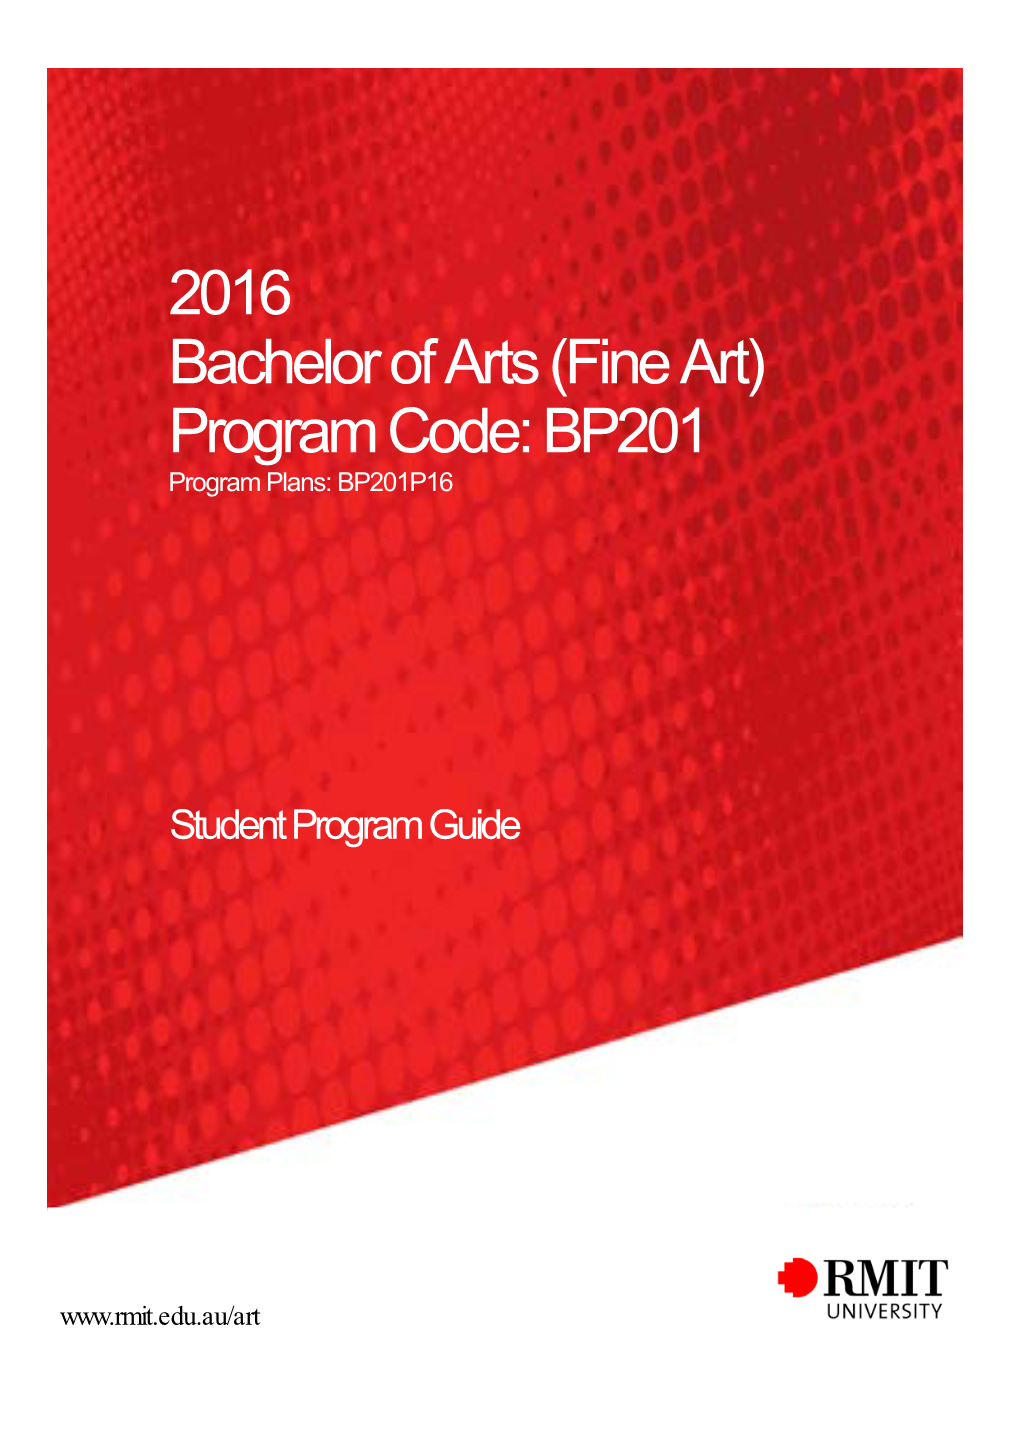 Fine Art) Program Code: BP201 Program Plans: BP201P16